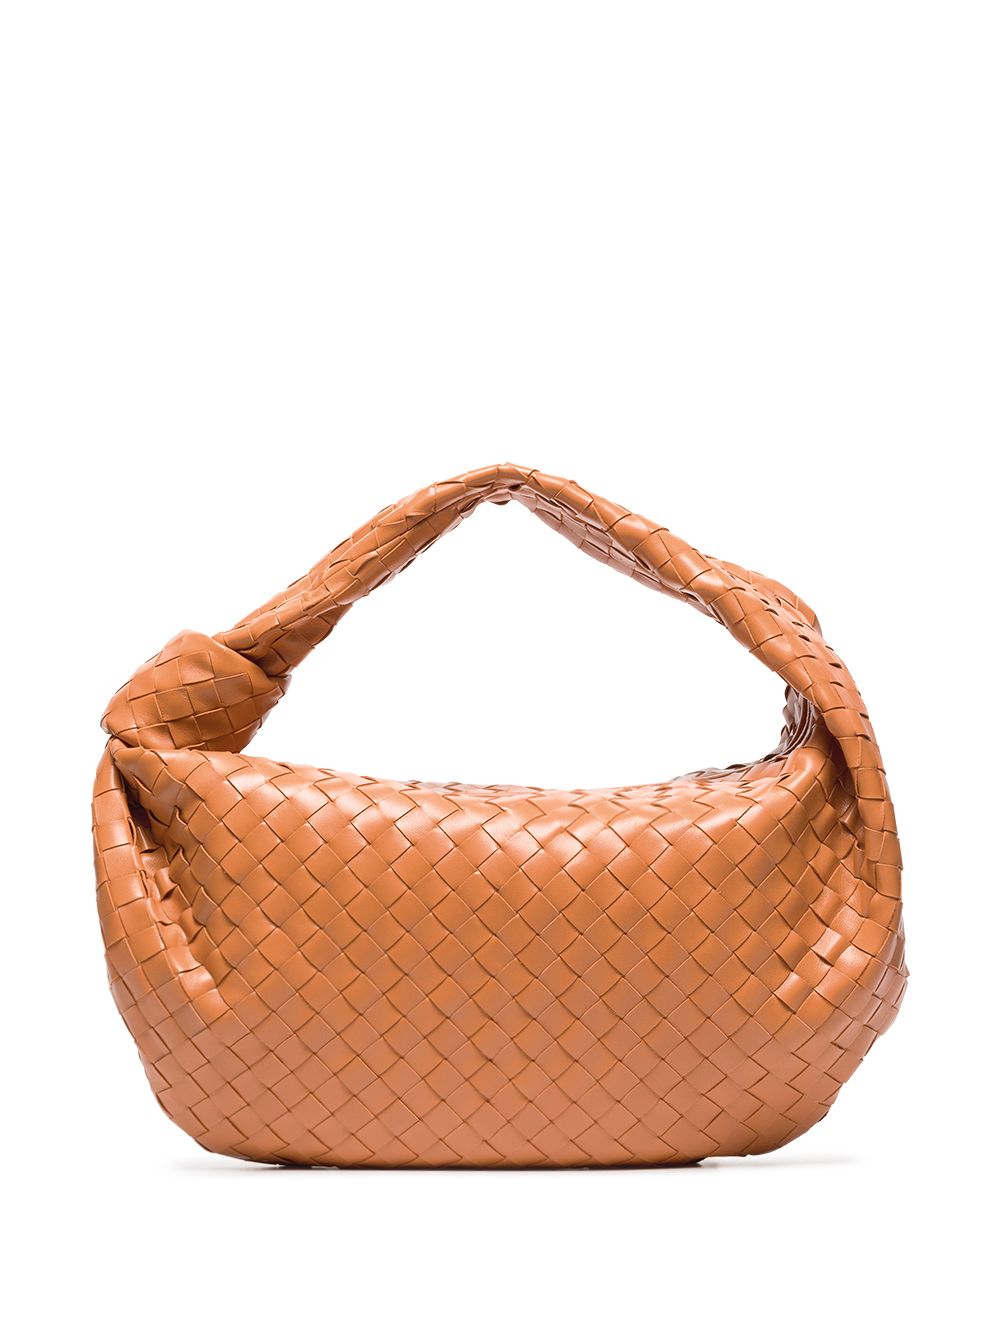 фото Bottega veneta маленькая сумка на плечо jodie с плетением intrecciato